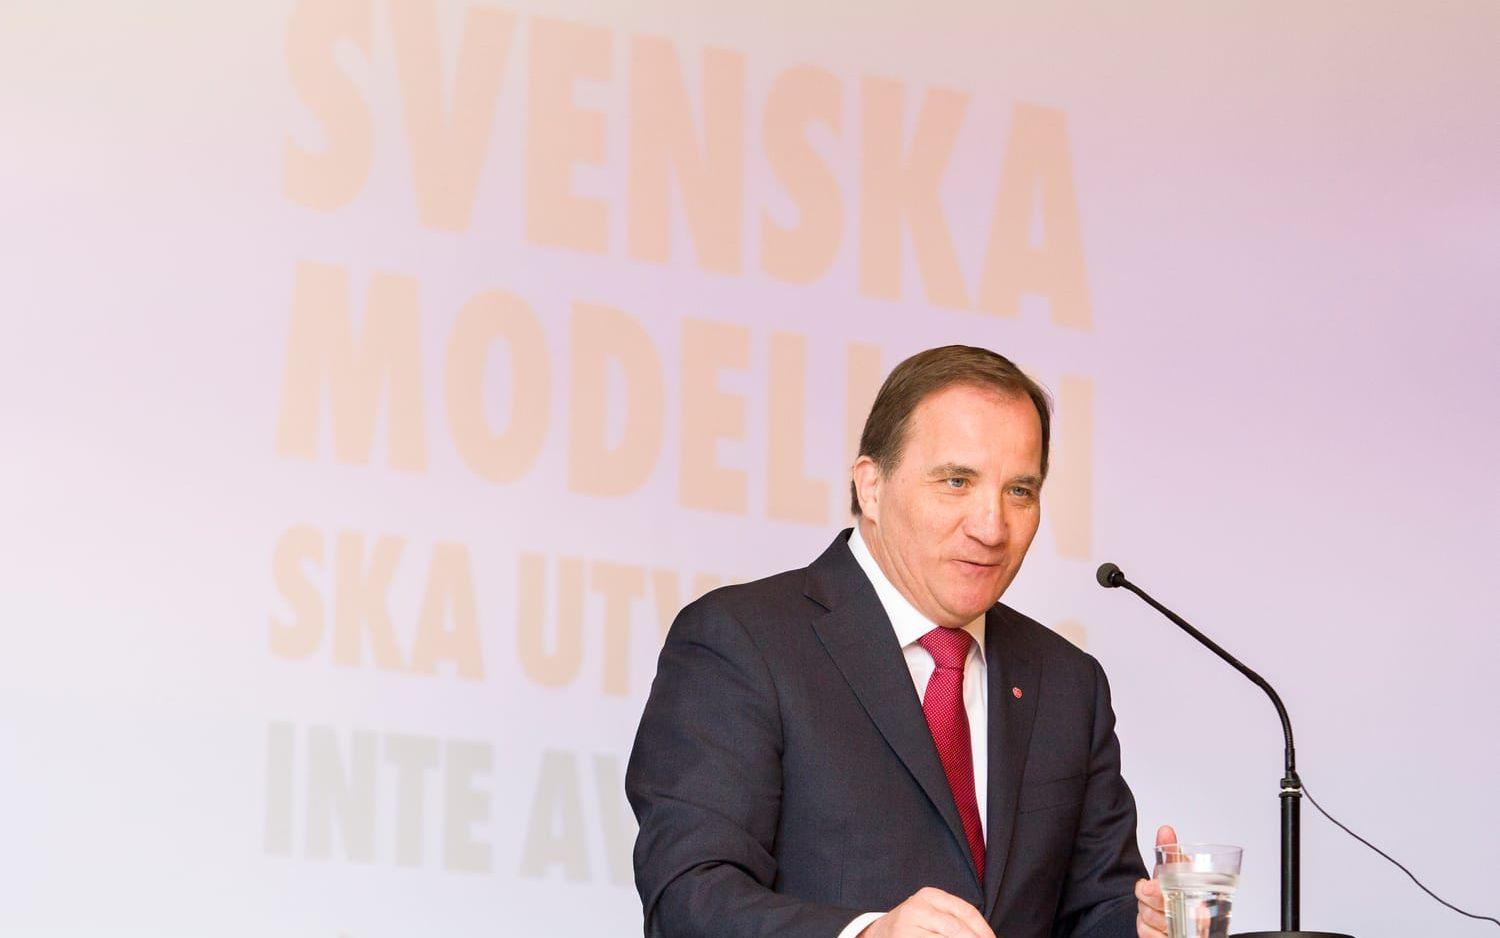 ”Svenska modellen ska utvecklas, inte avvecklas.” Så löd det S-märkta budskapet för dagen. Bild: Jonatan Gernes